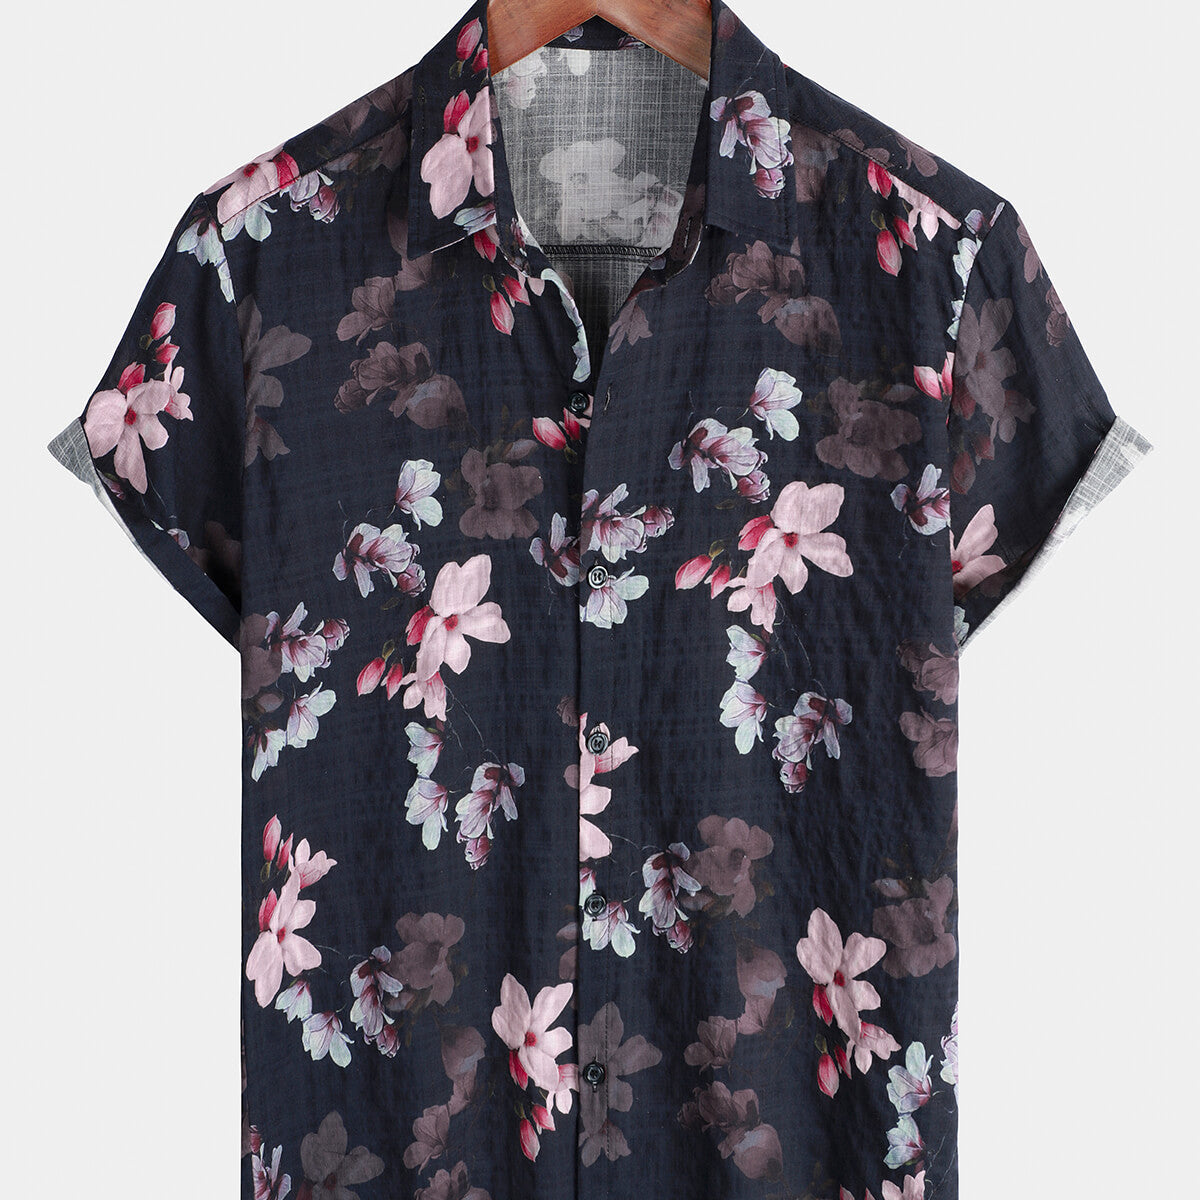 Men's Floral Holiday Hawaiian Short Sleeve Beach Button Up Summer Shirt